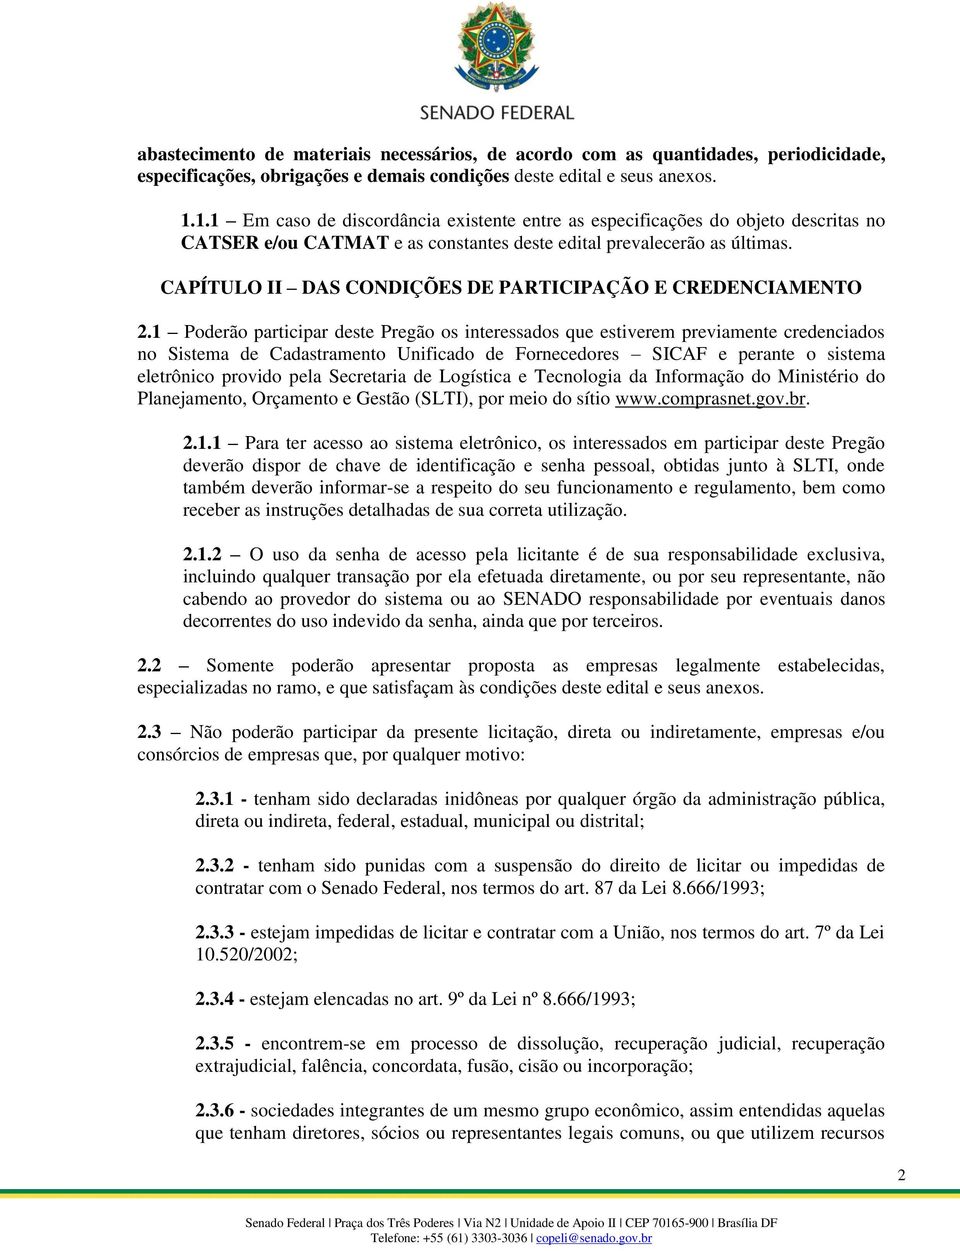 CAPÍTULO II DAS CONDIÇÕES DE PARTICIPAÇÃO E CREDENCIAMENTO 2.